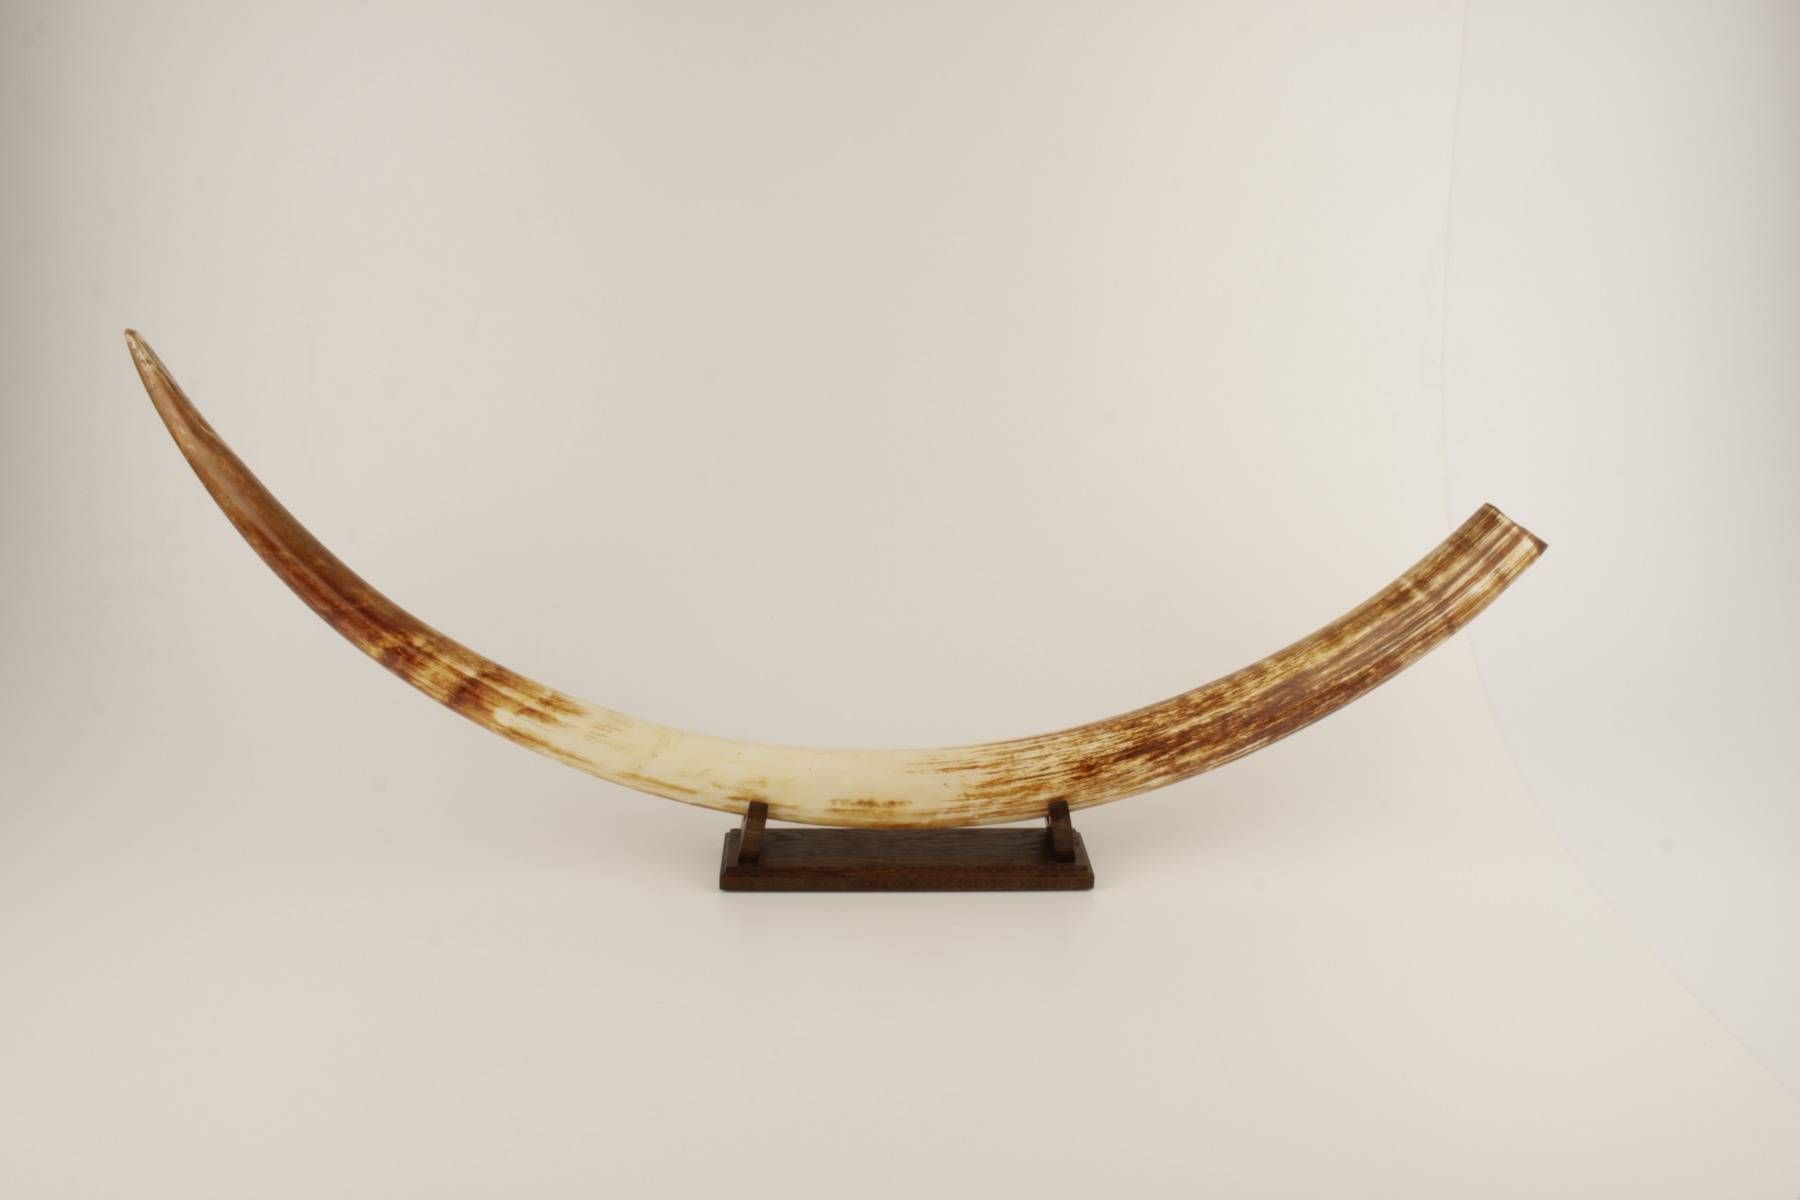 Natural woolly mammoth tusk 